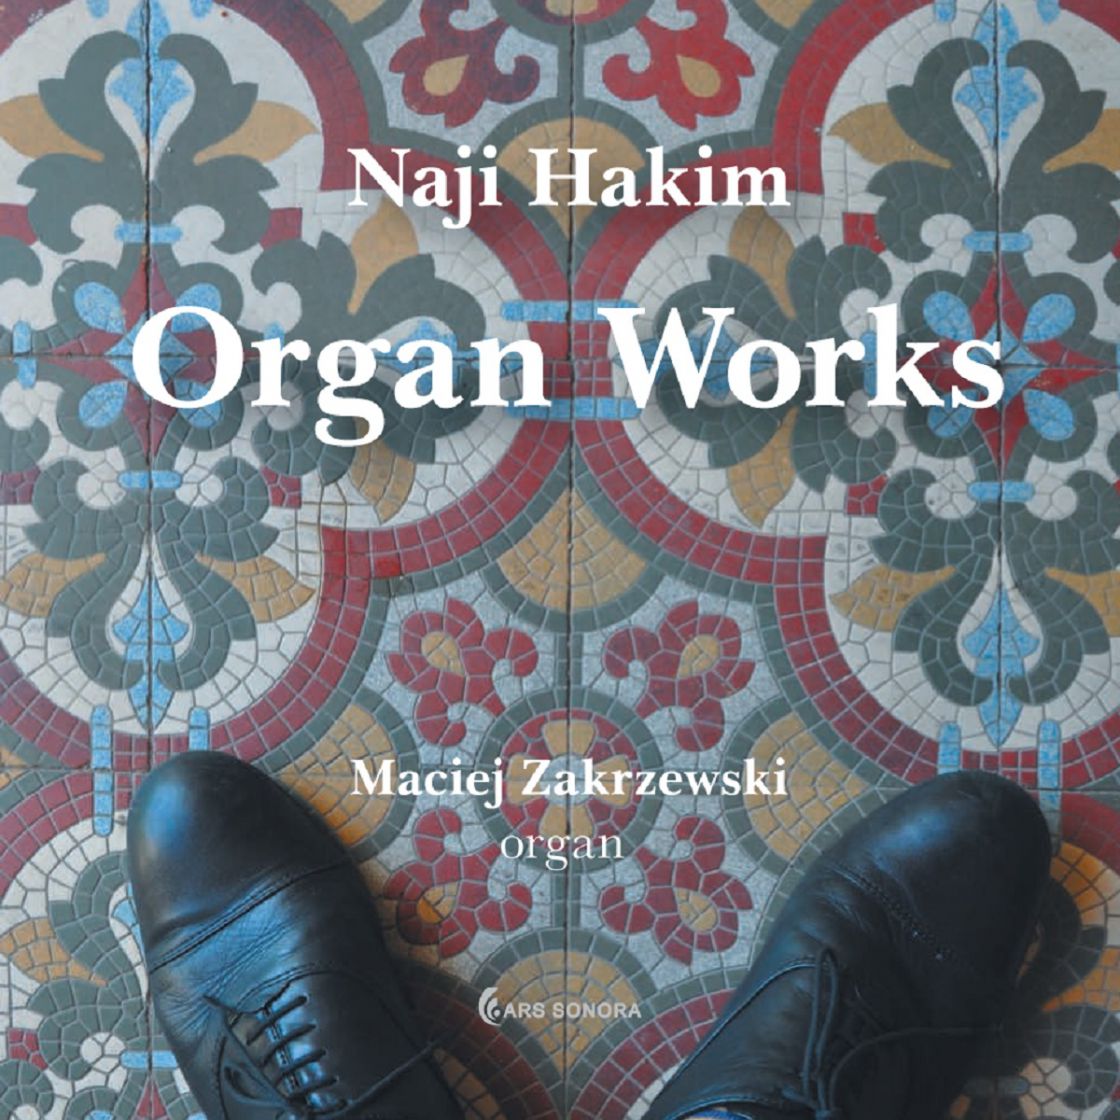 Naji Hakim - Organ Works - Maciej Zakrzewski